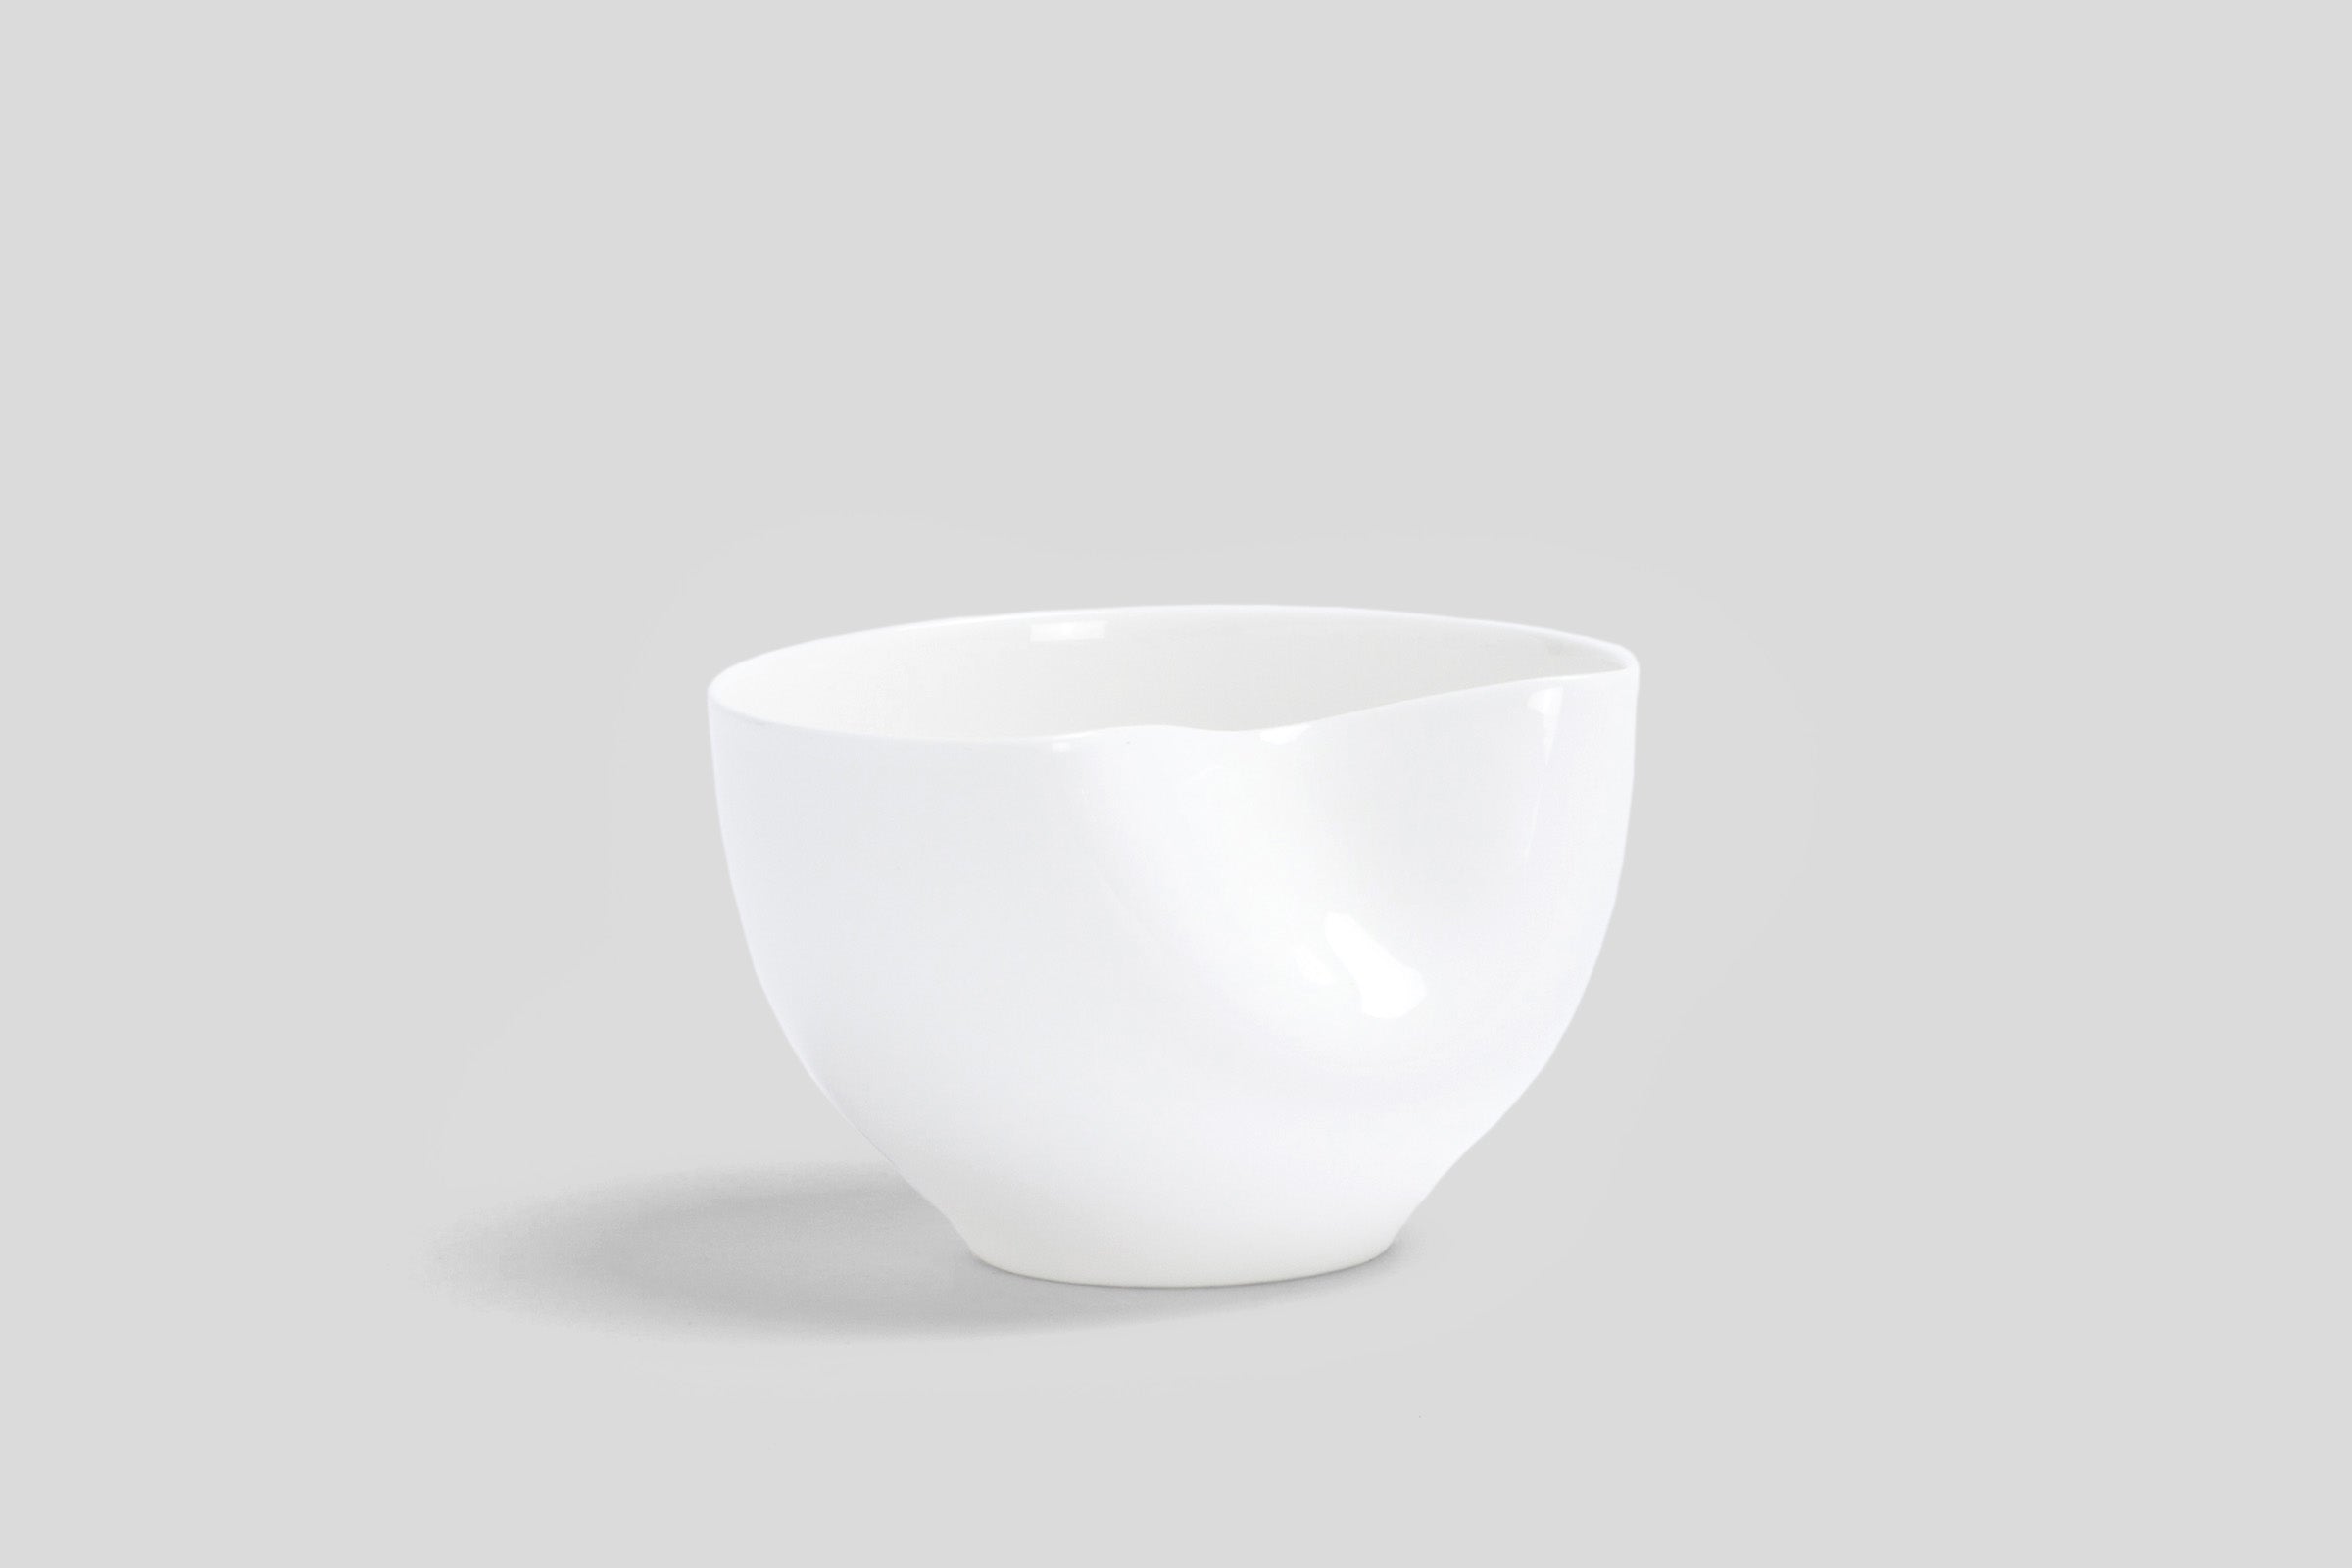 Bodo Sperlein White Sculptural Dented Bowl